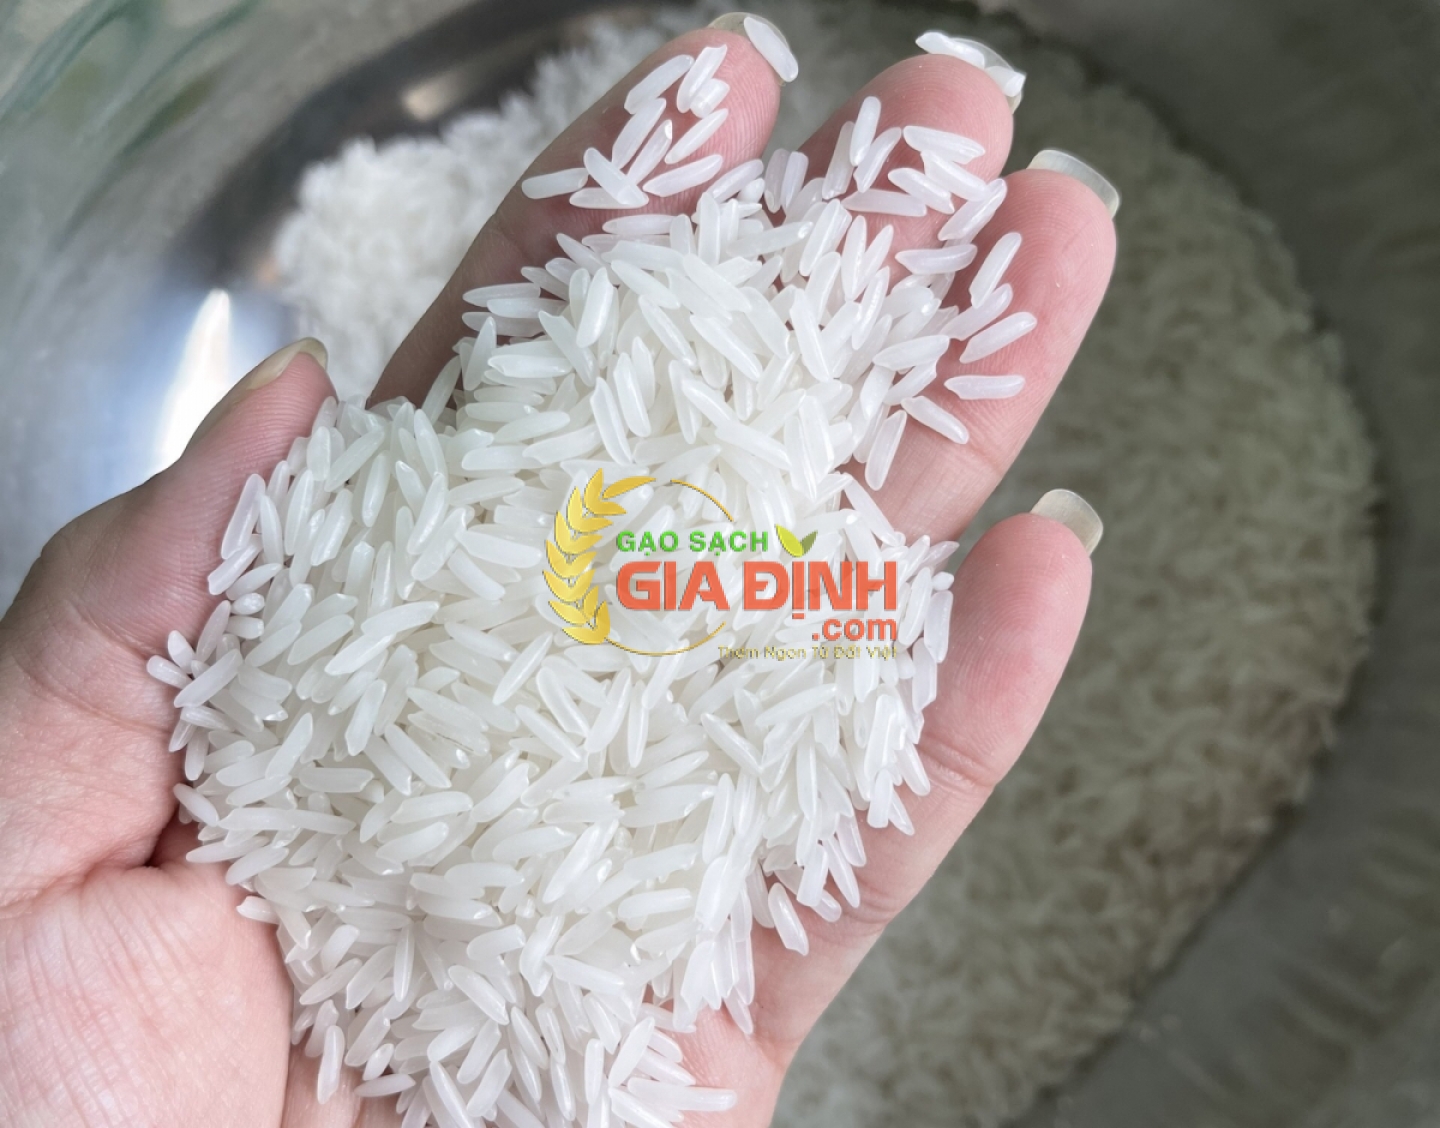 Gạo Lài Miên Combodia